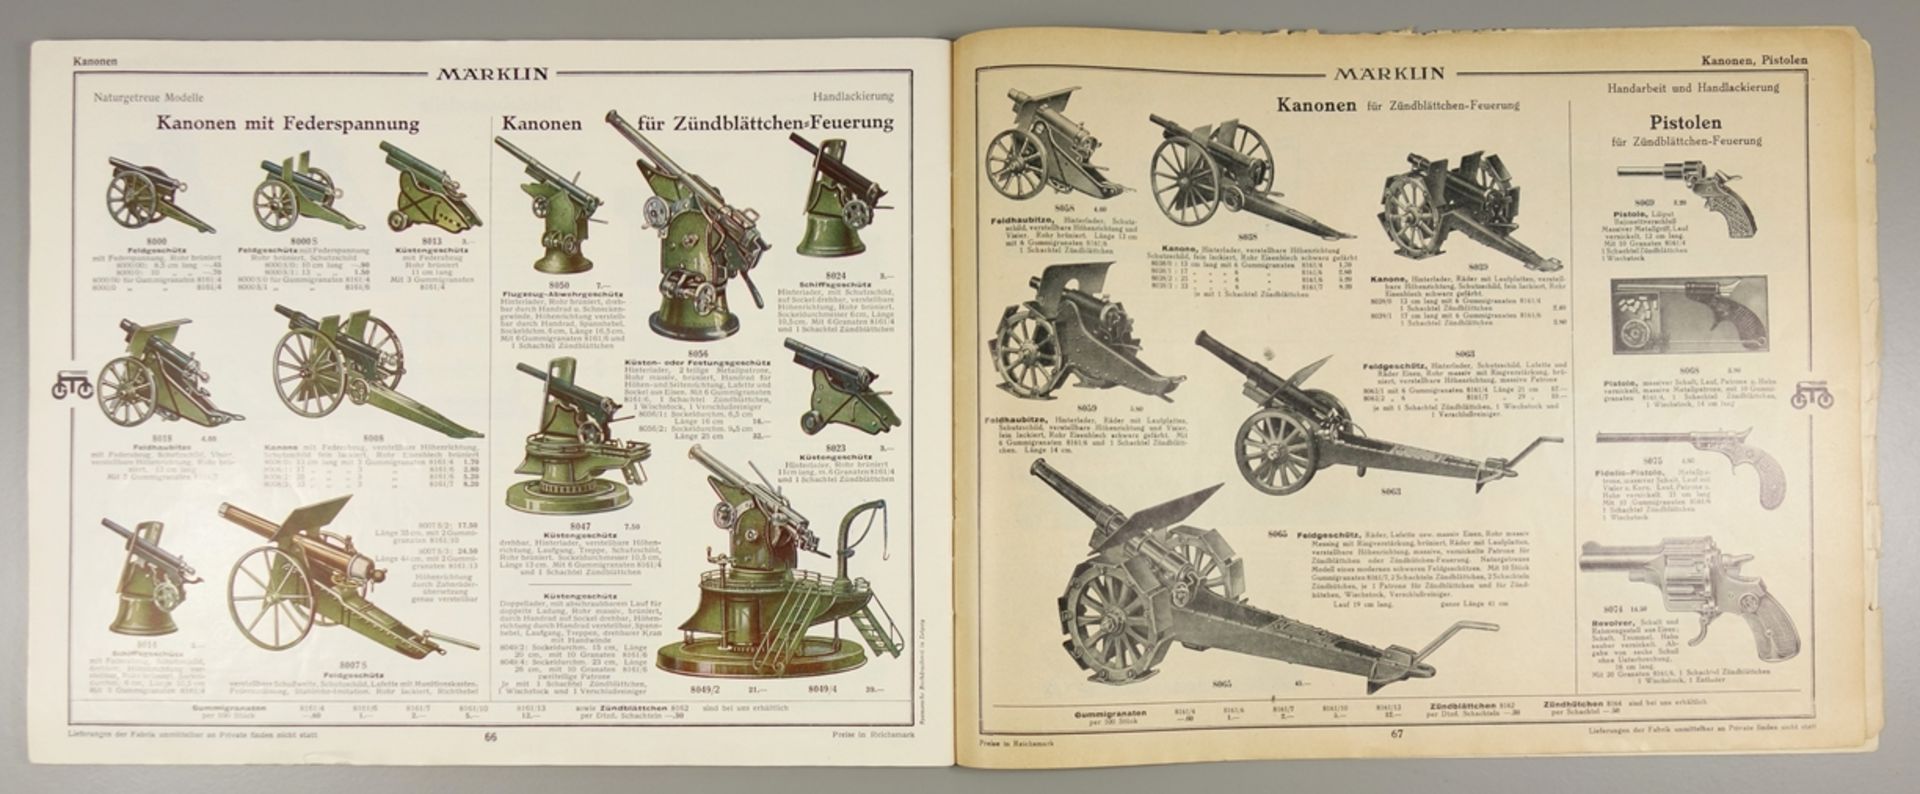 2 Märklin -Spielwarenkataloge, 1930 und 1931, Vertrieb Paul Behrendsen, Magdeburg; Katalog von 1930, - Bild 4 aus 5